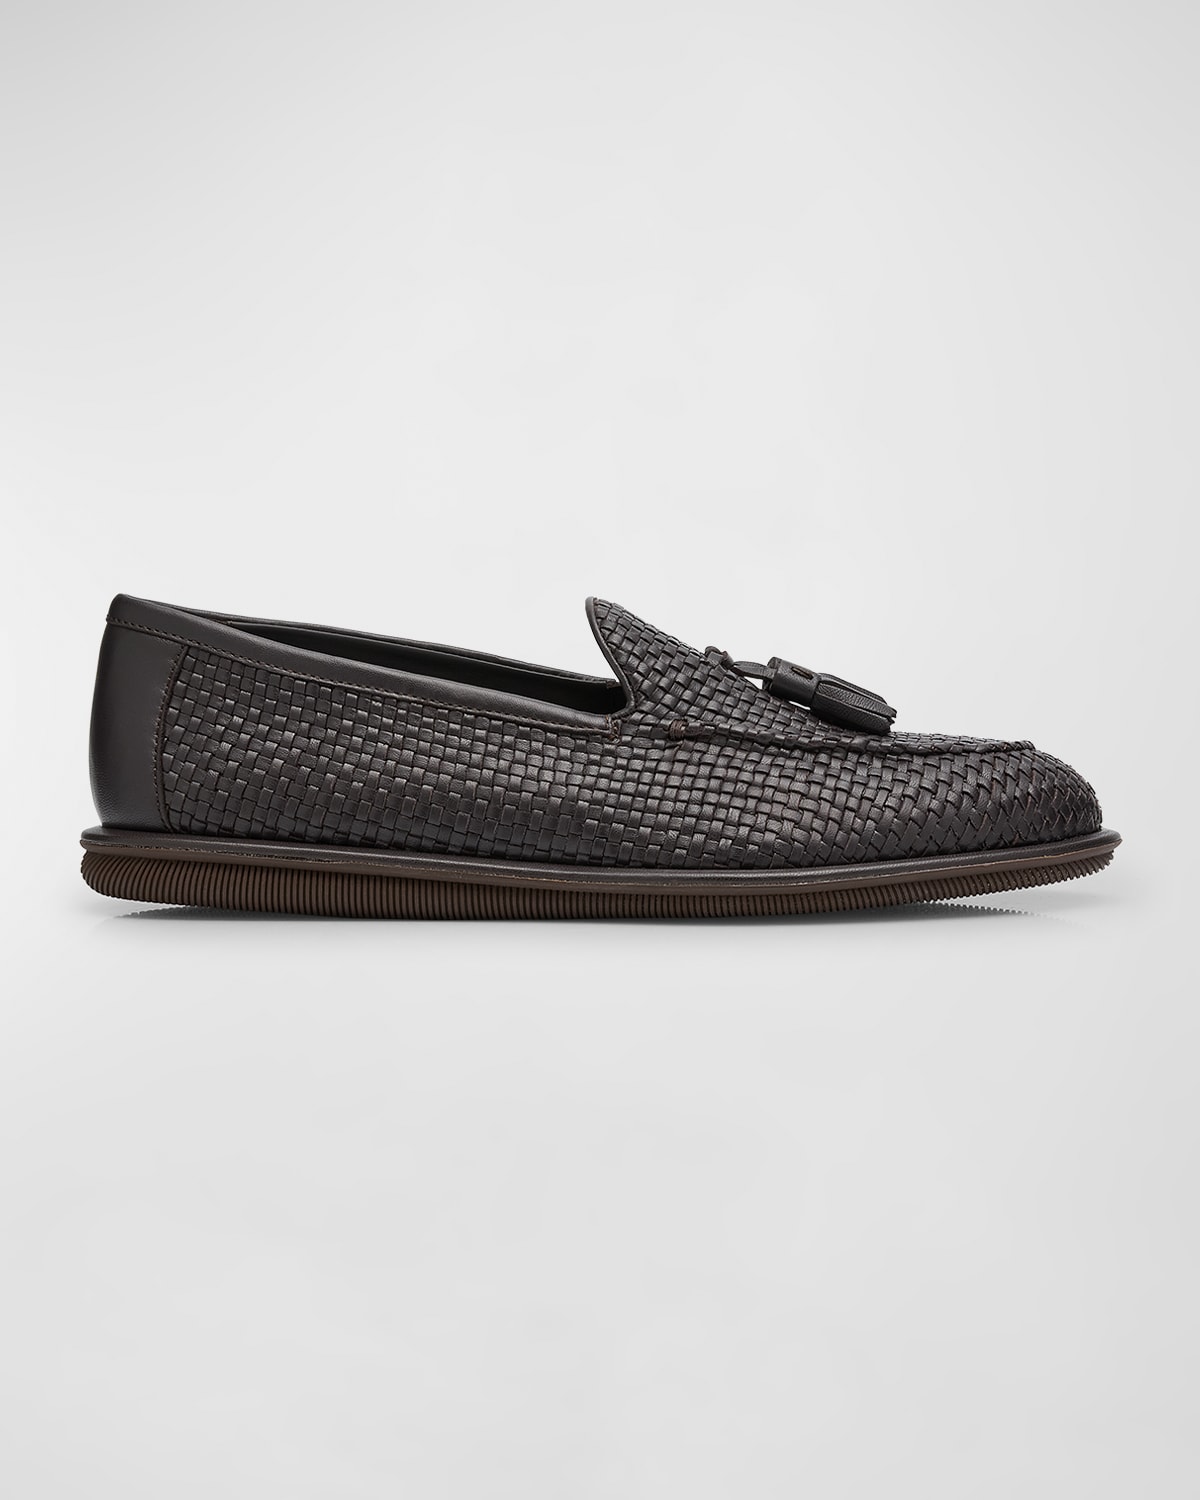 Shop Giorgio Armani Men's Woven Leather Tassel Loafers In Brown